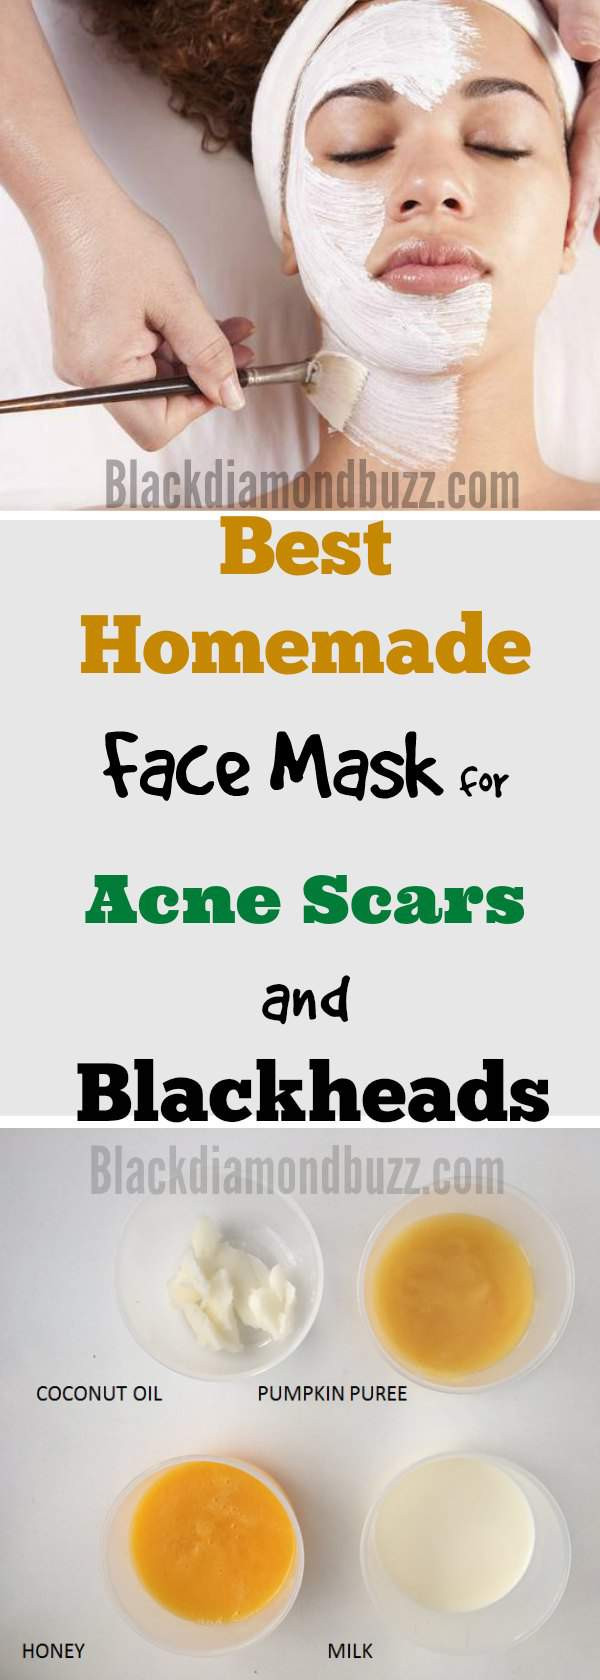 Acne Face Masks DIY
 DIY Face Mask for Acne 7 Best Homemade Face Masks